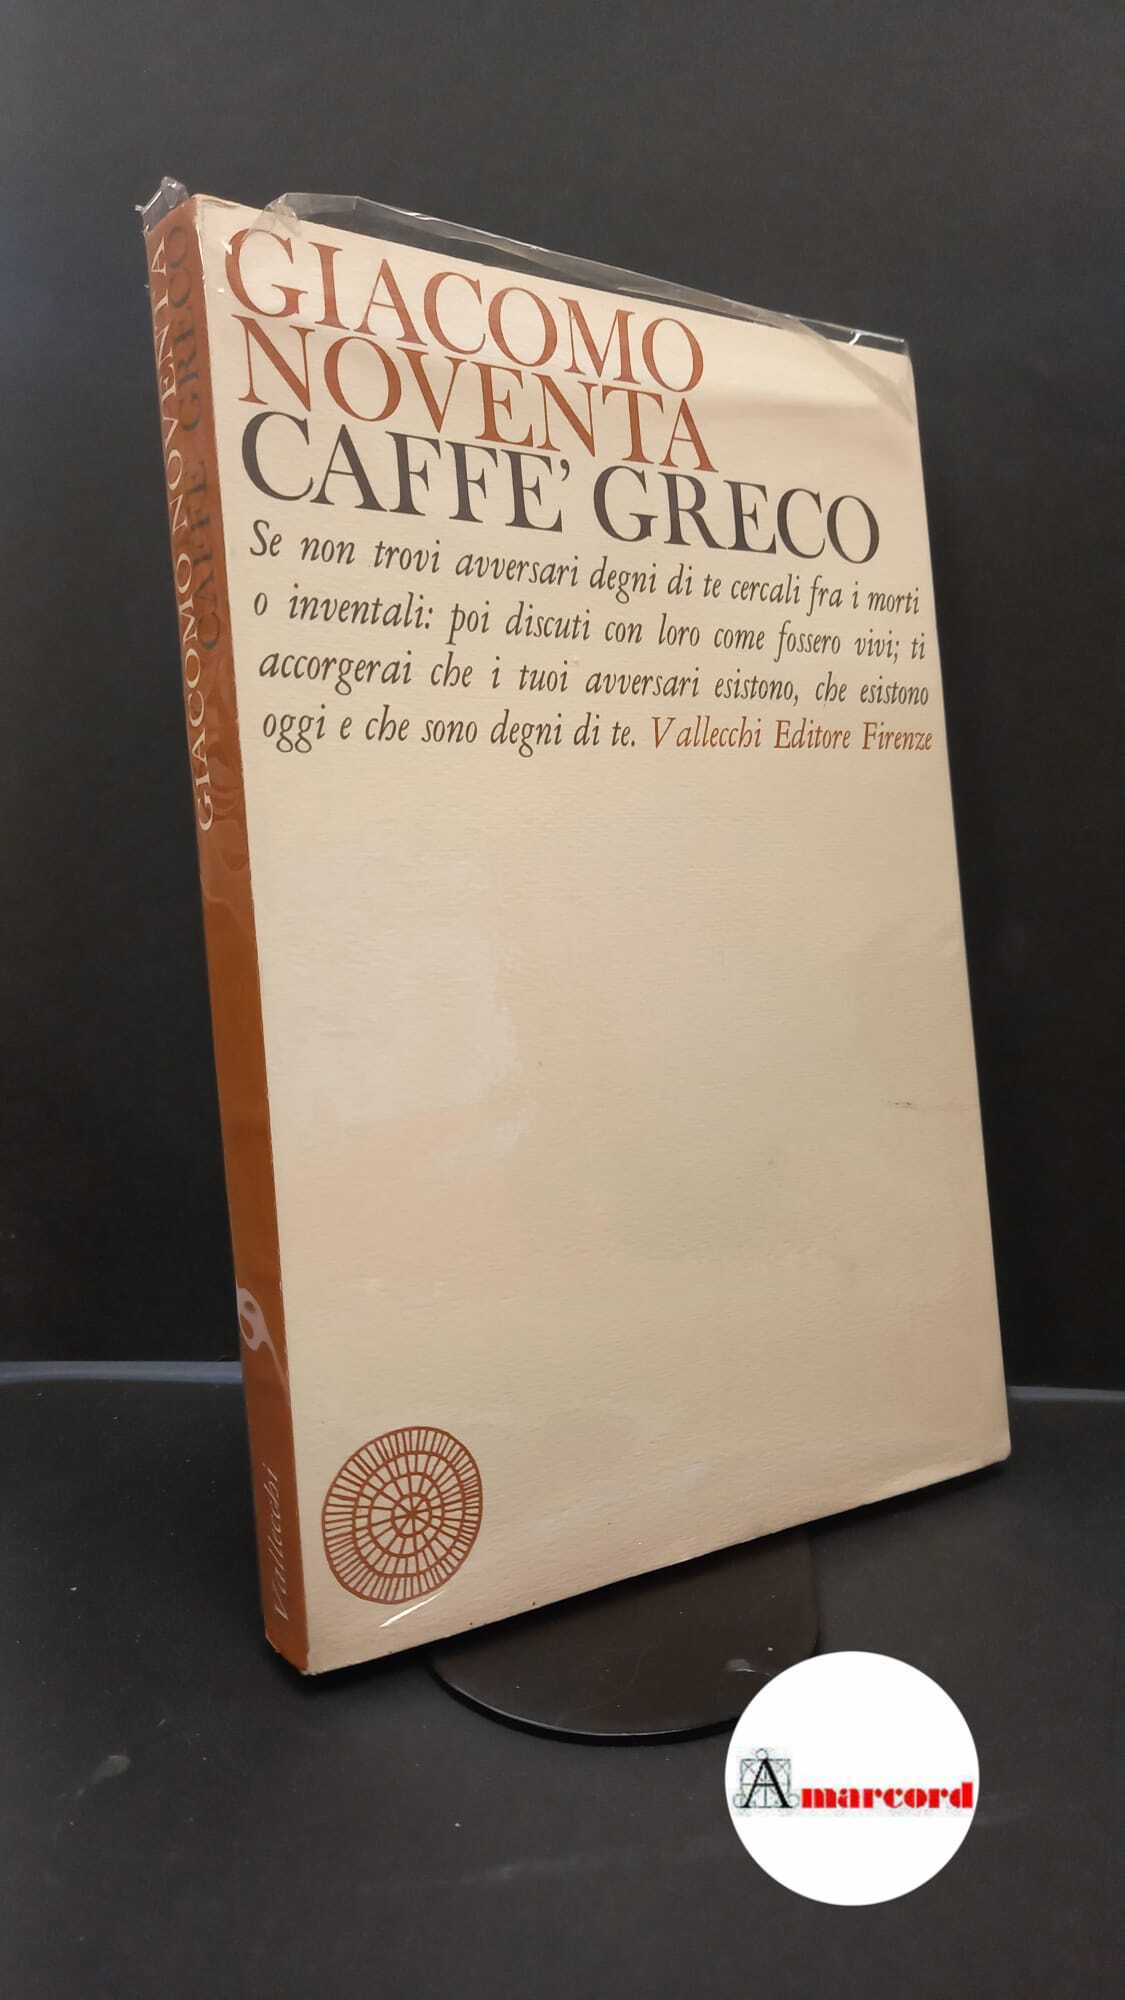 Noventa, Giacomo. , and Noventa, Franca. Caffé Greco Firenze Vallecchi, …